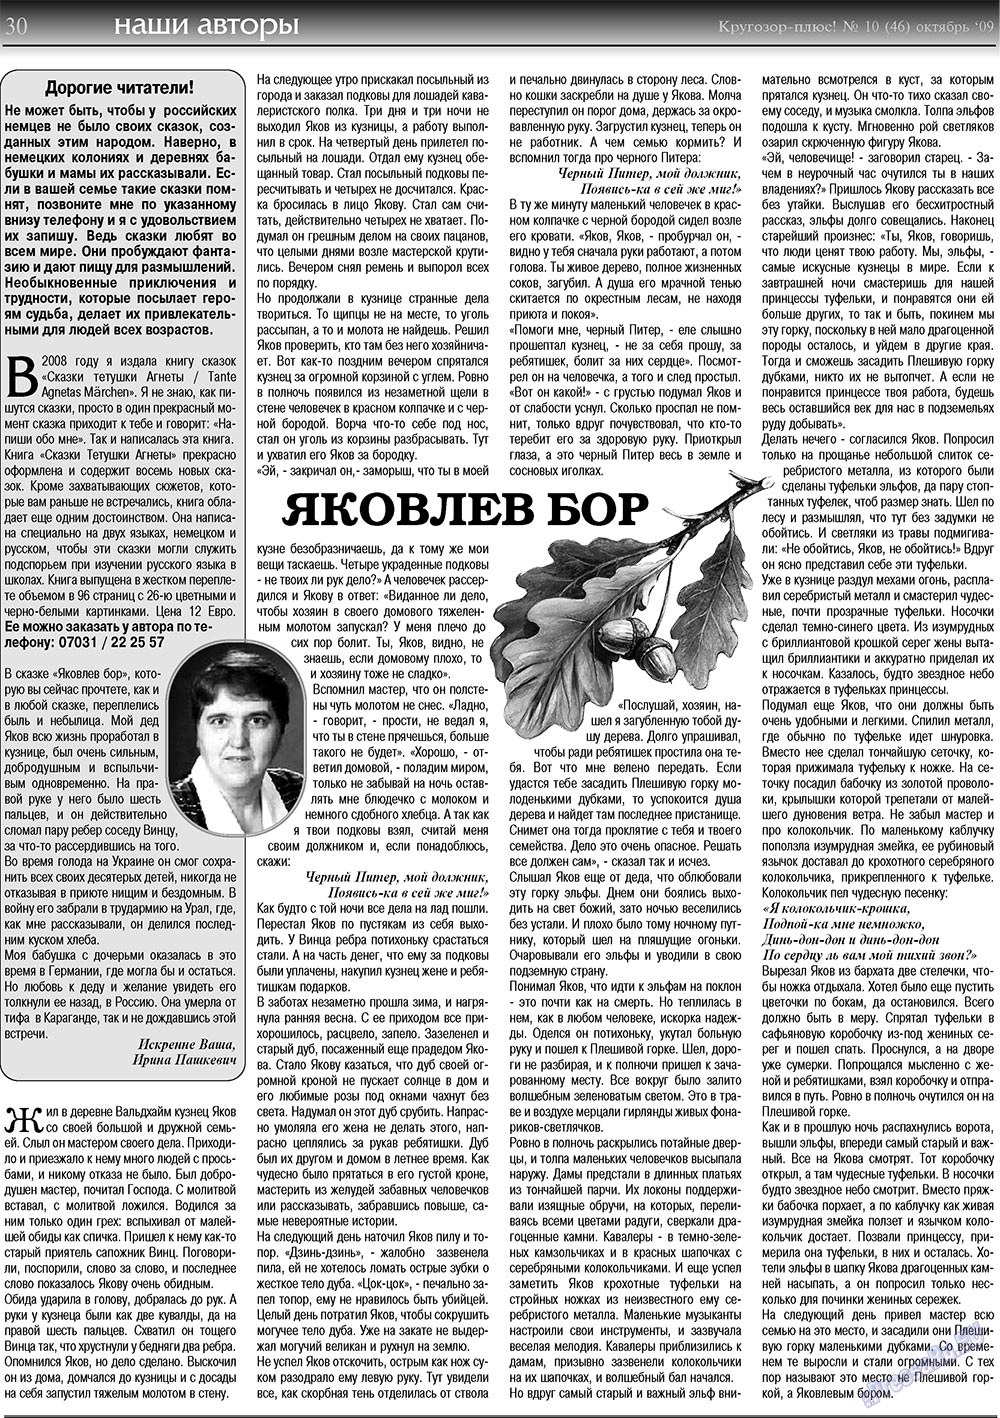 Кругозор плюс!, газета. 2009 №10 стр.30